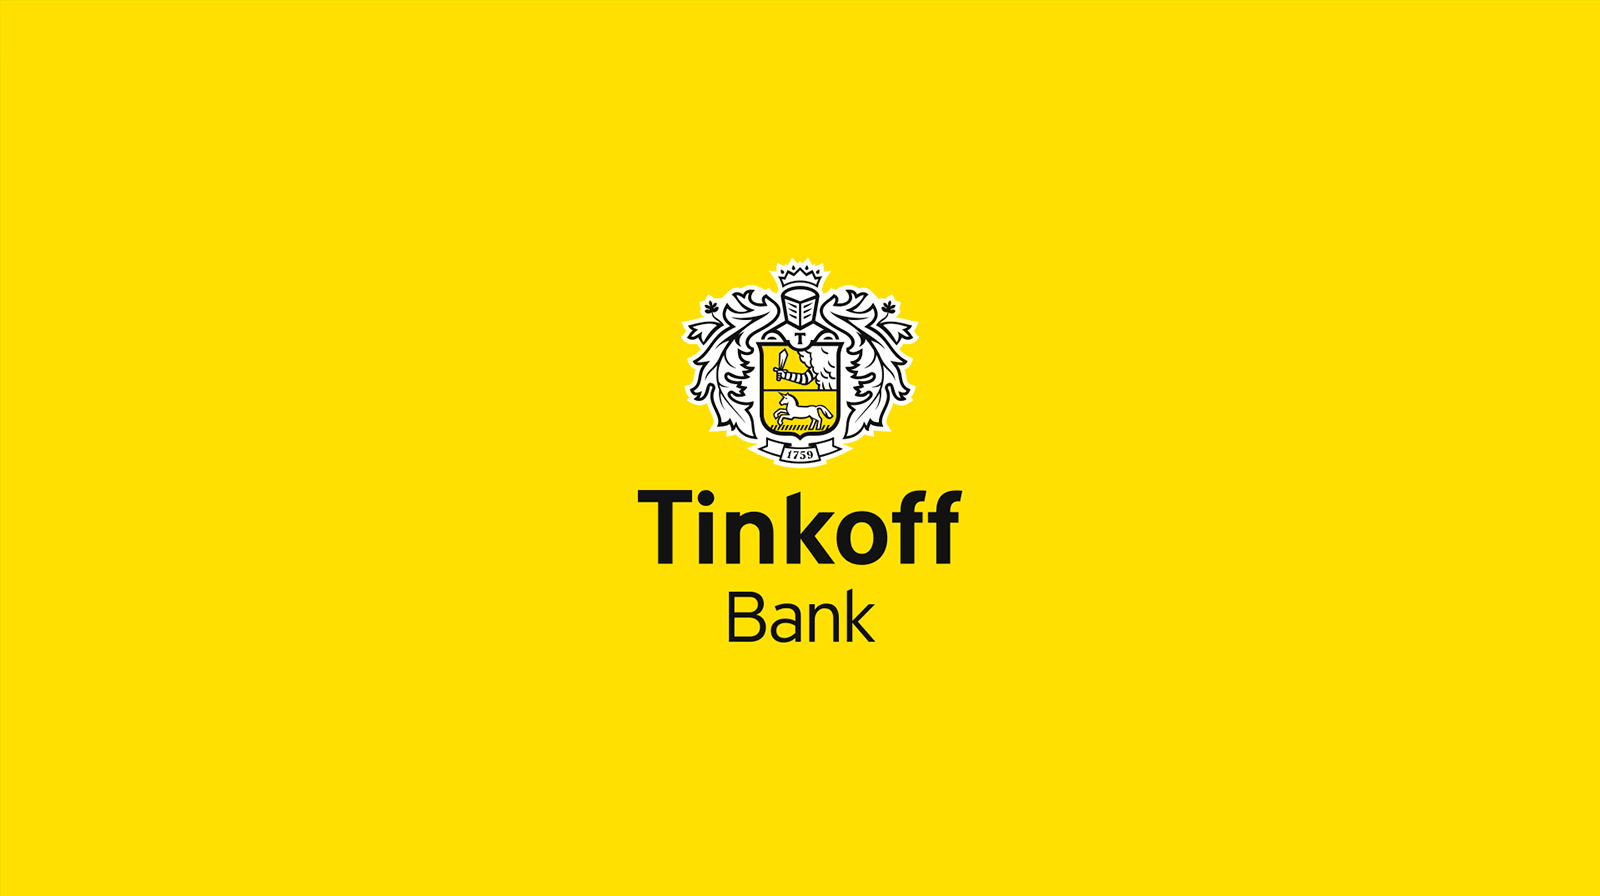 Тинькофф-банк запросил у клиентов согласие на обработку их фотографий, сделанных при оформлении продуктов